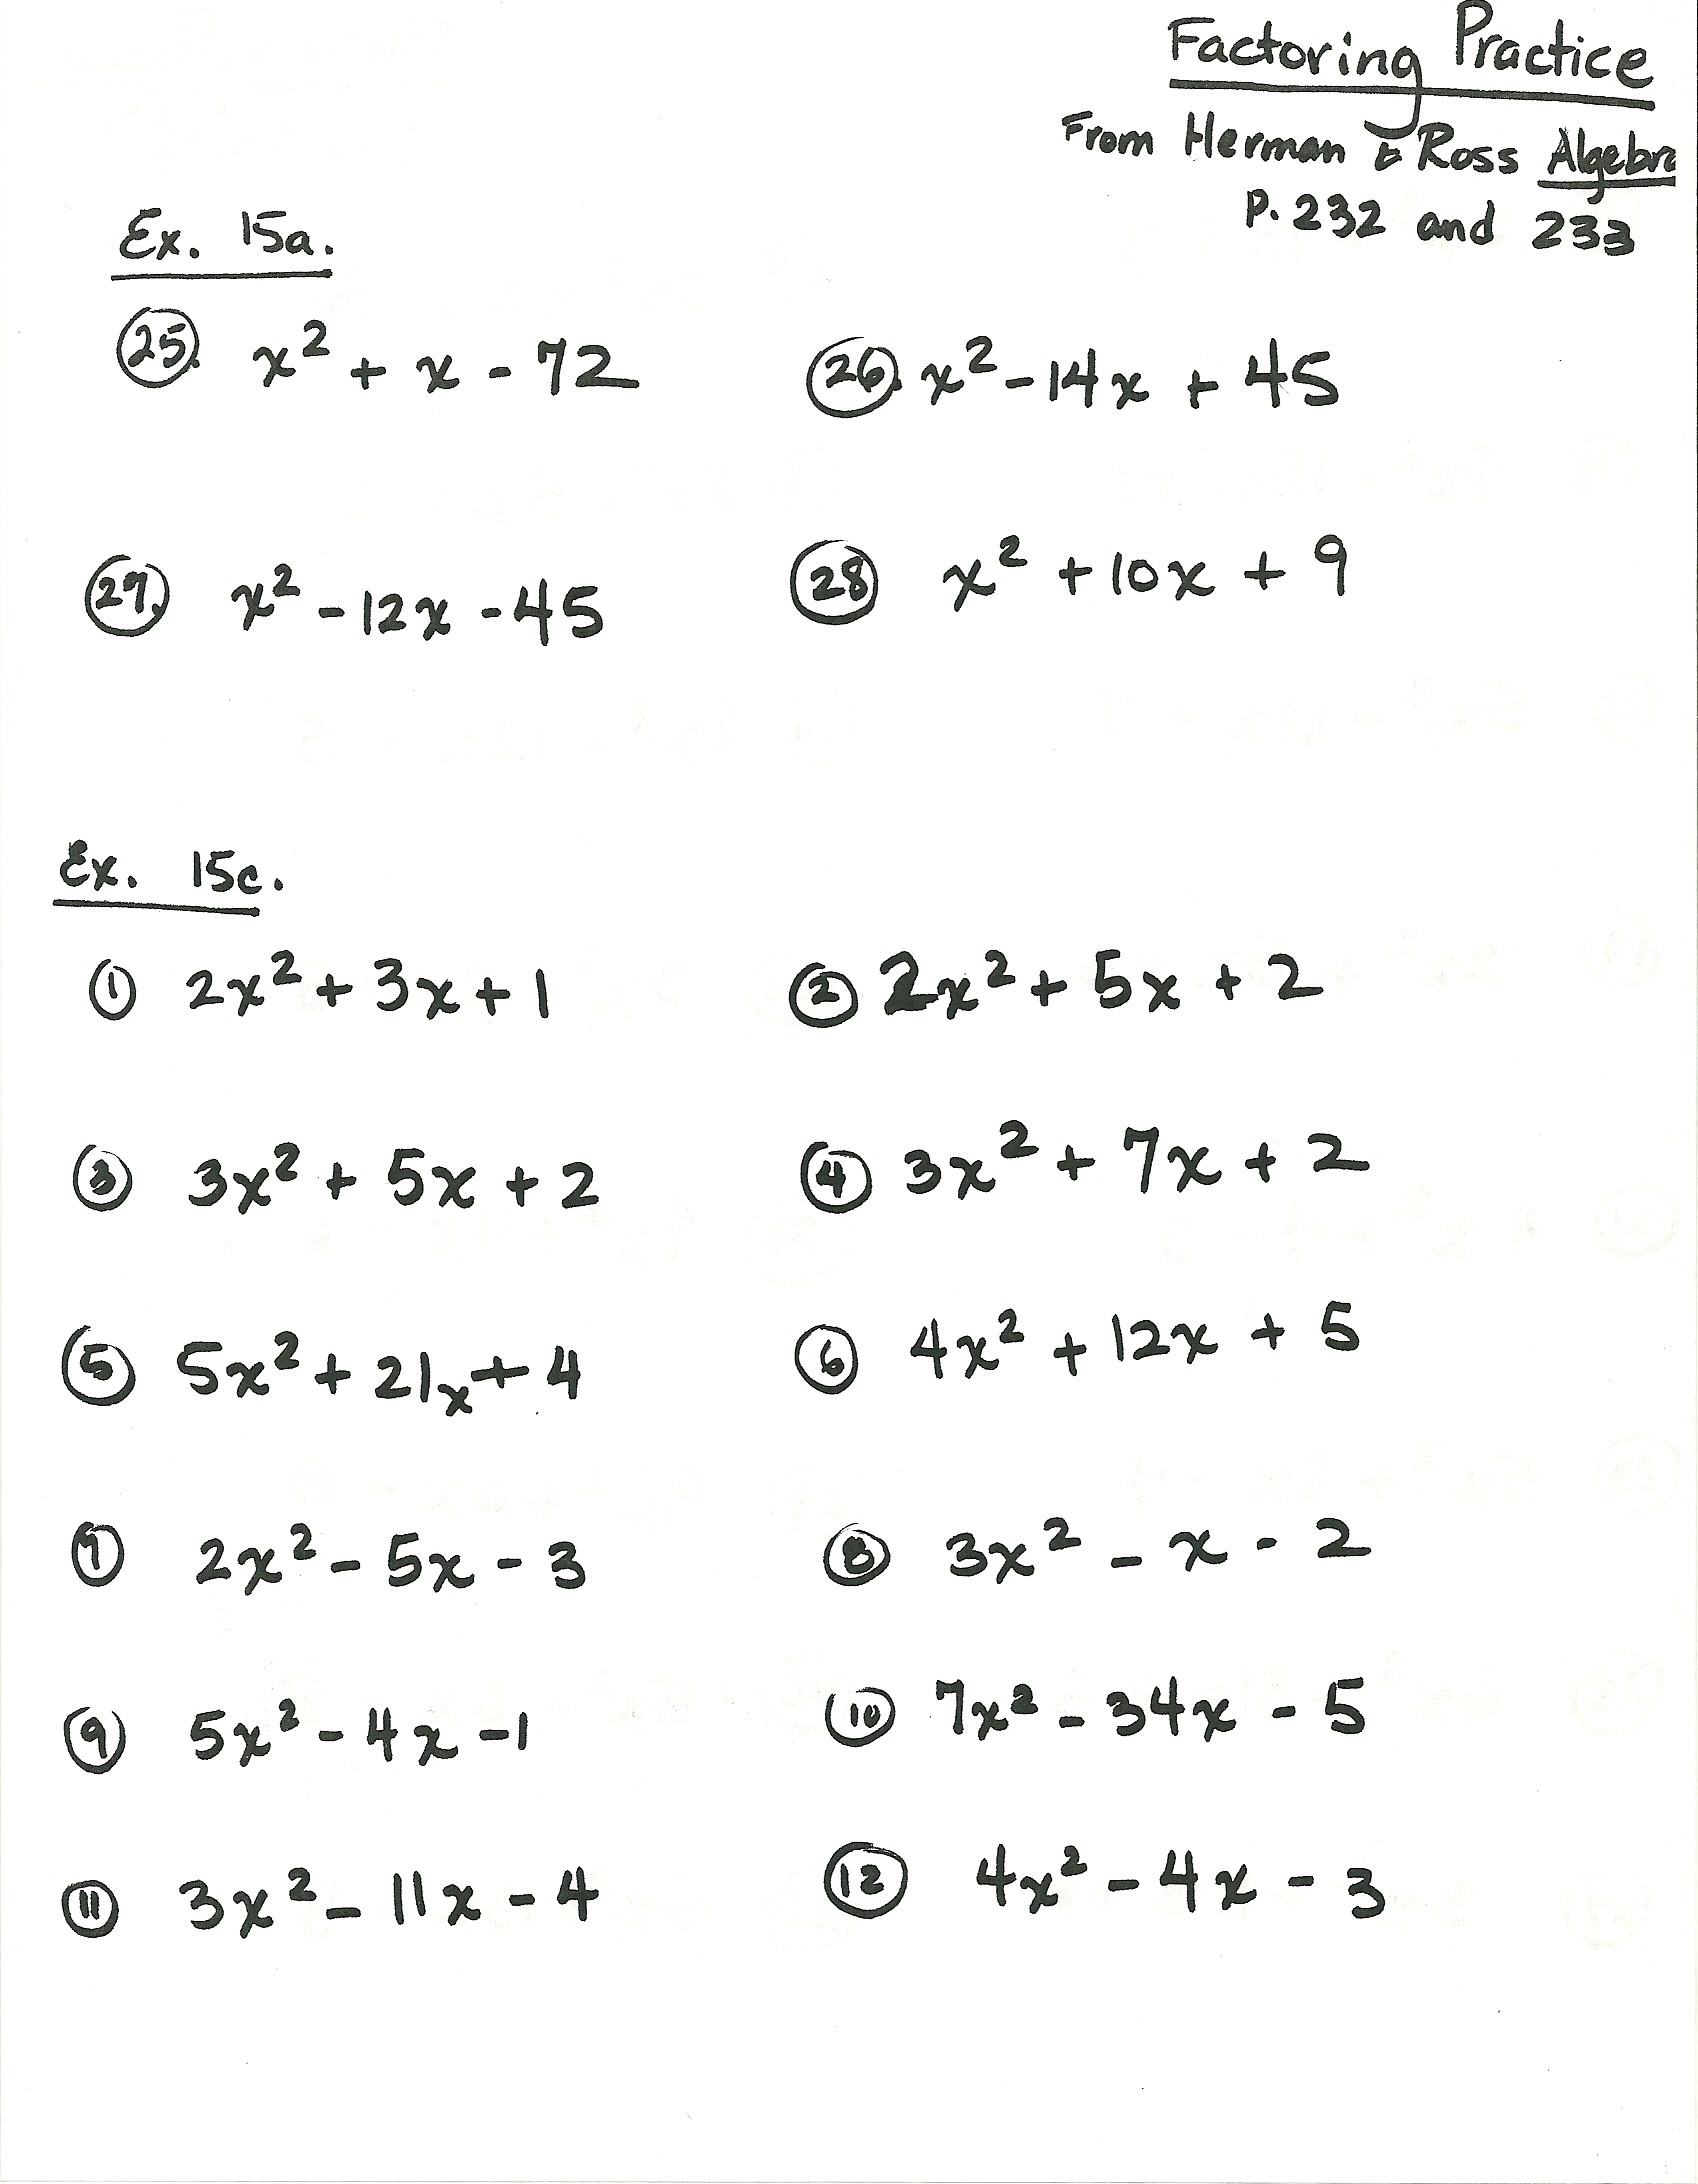 complete factoring common core algebra ii homework